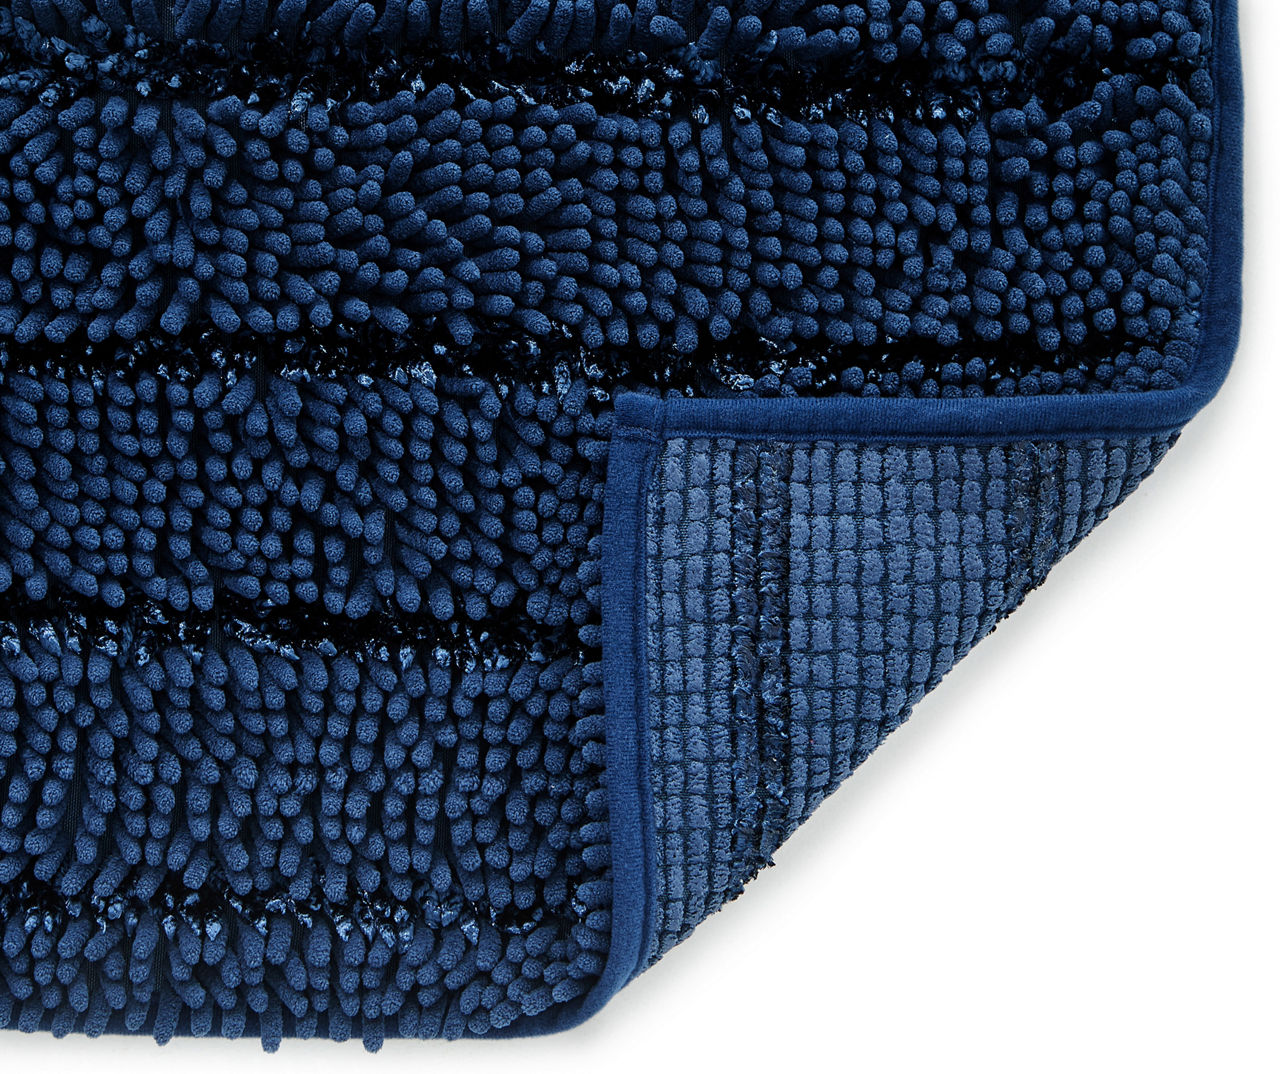 Blue Bath Mat (Large Rectangle - 39x16) – Sierra Concepts